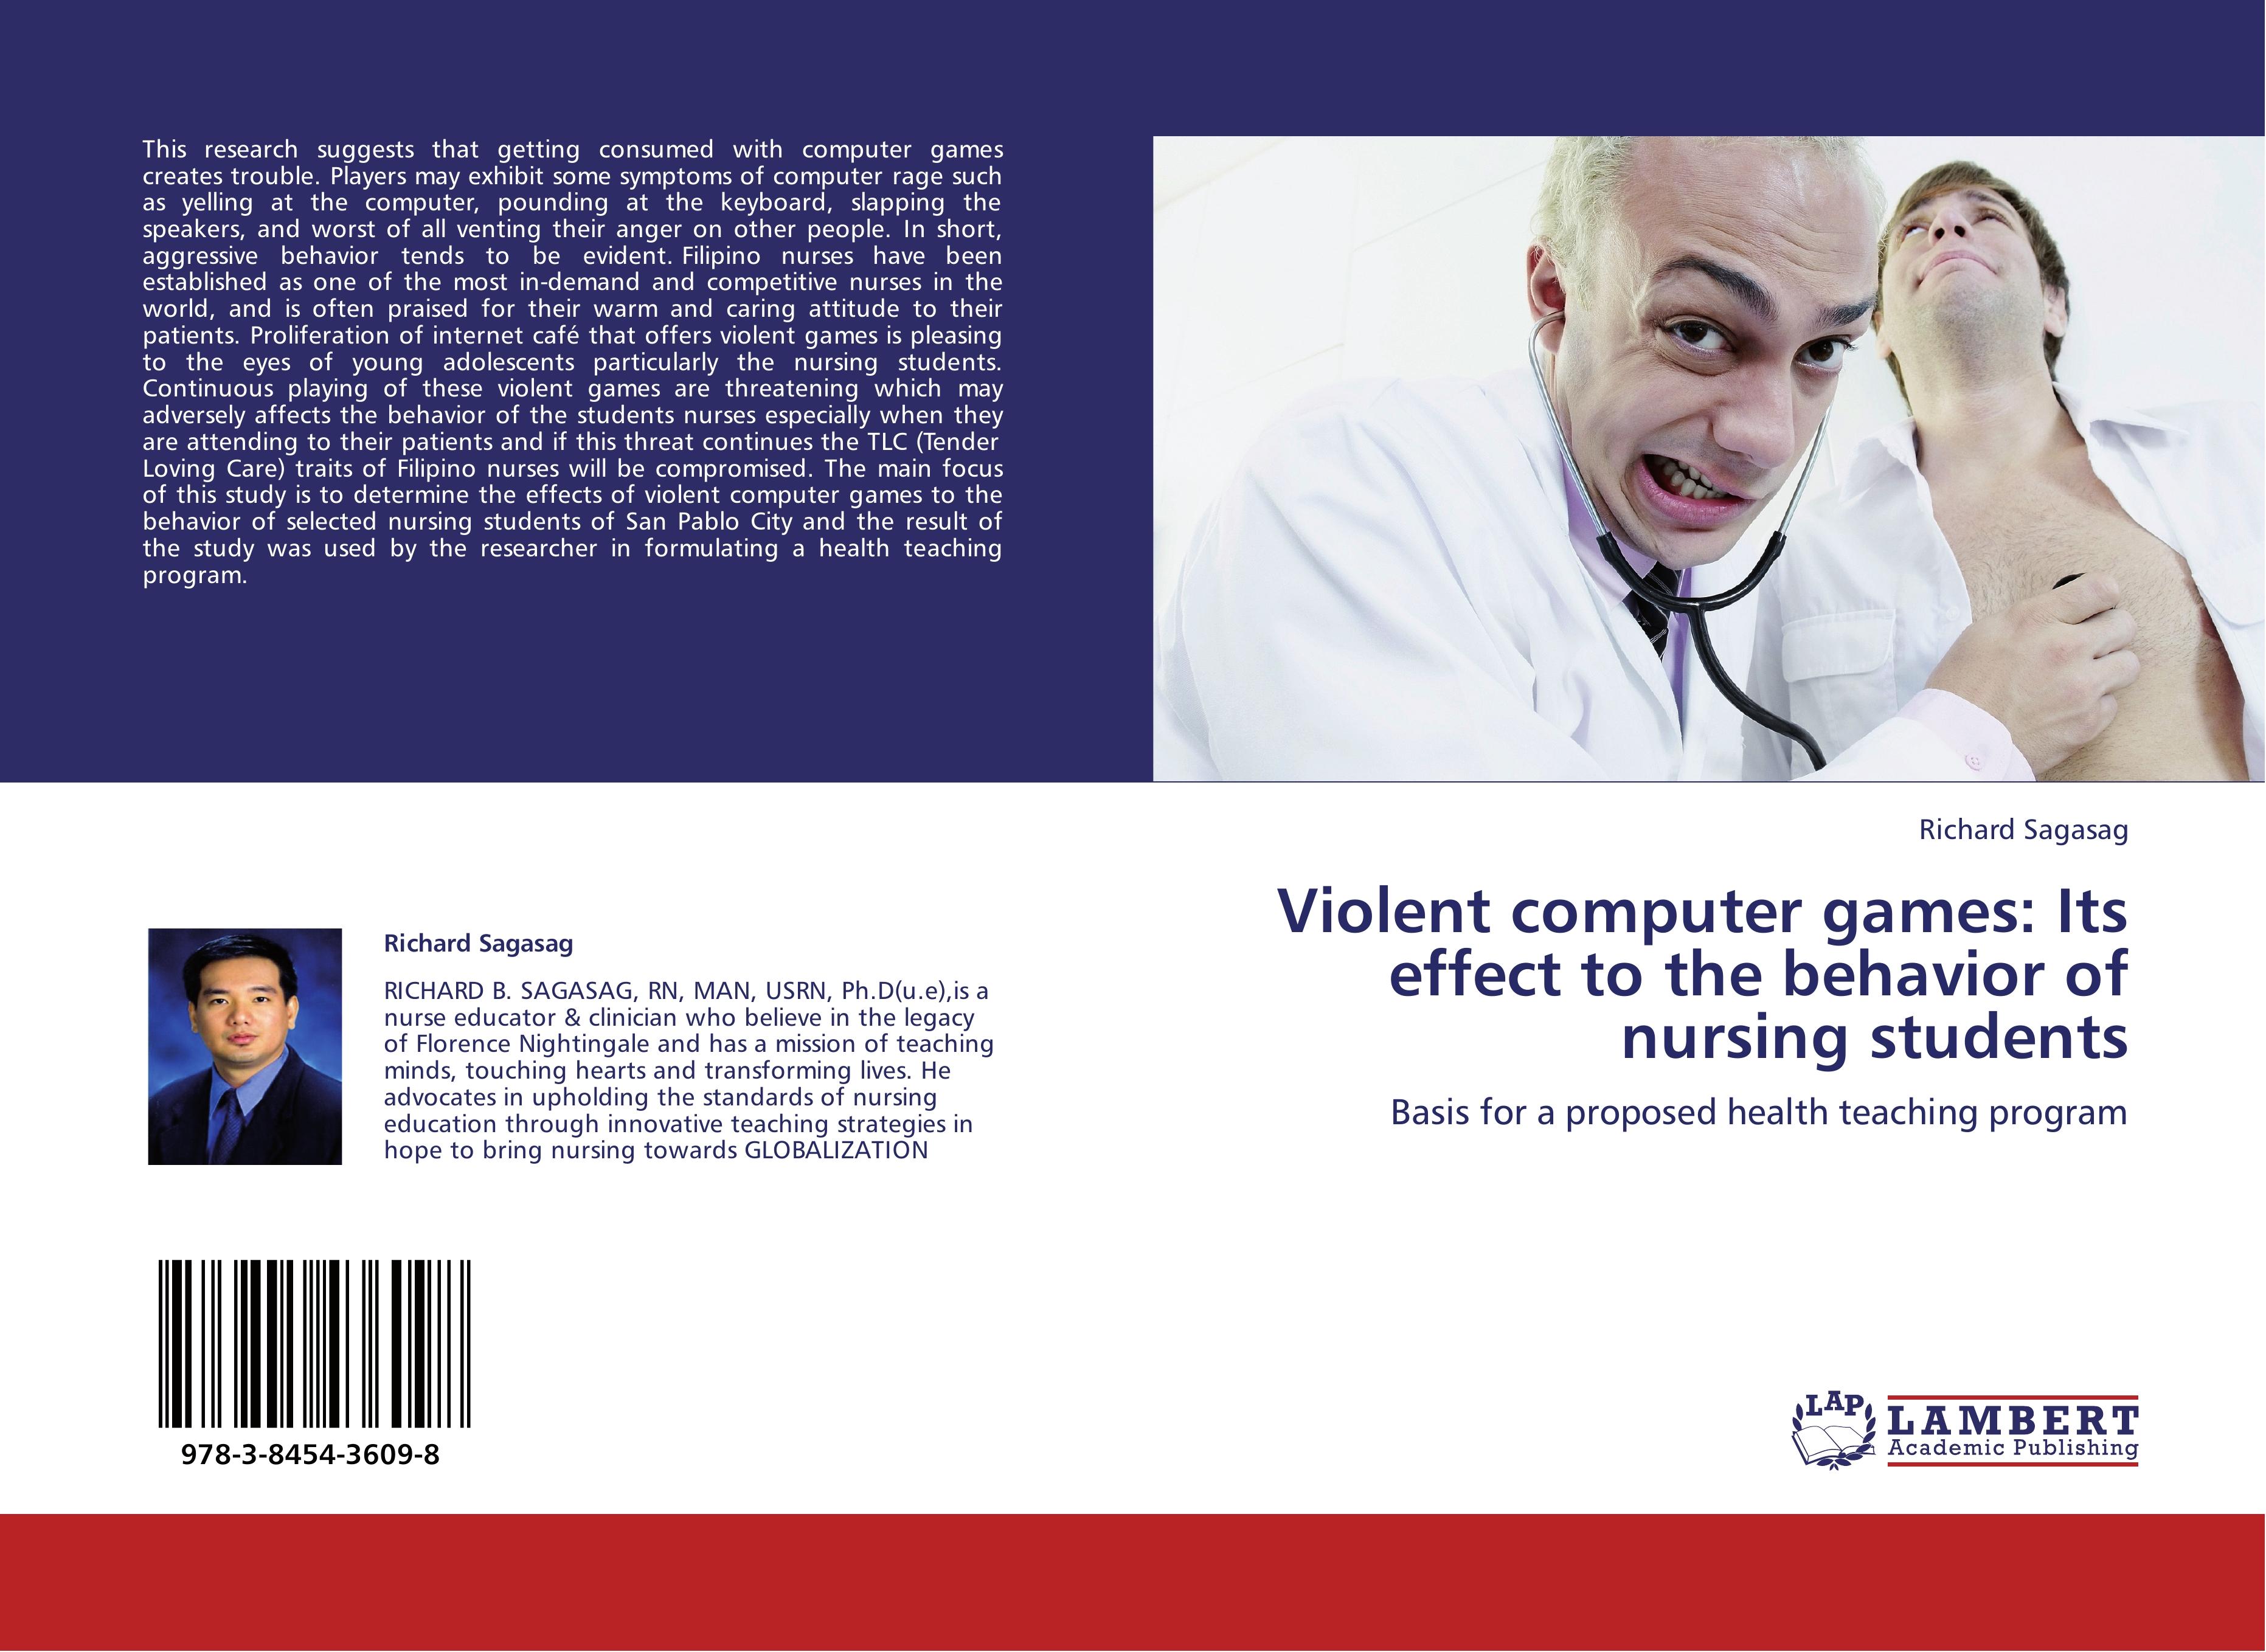 Violent computer games: Its effect to the behavior of nursing students - Richard Sagasag